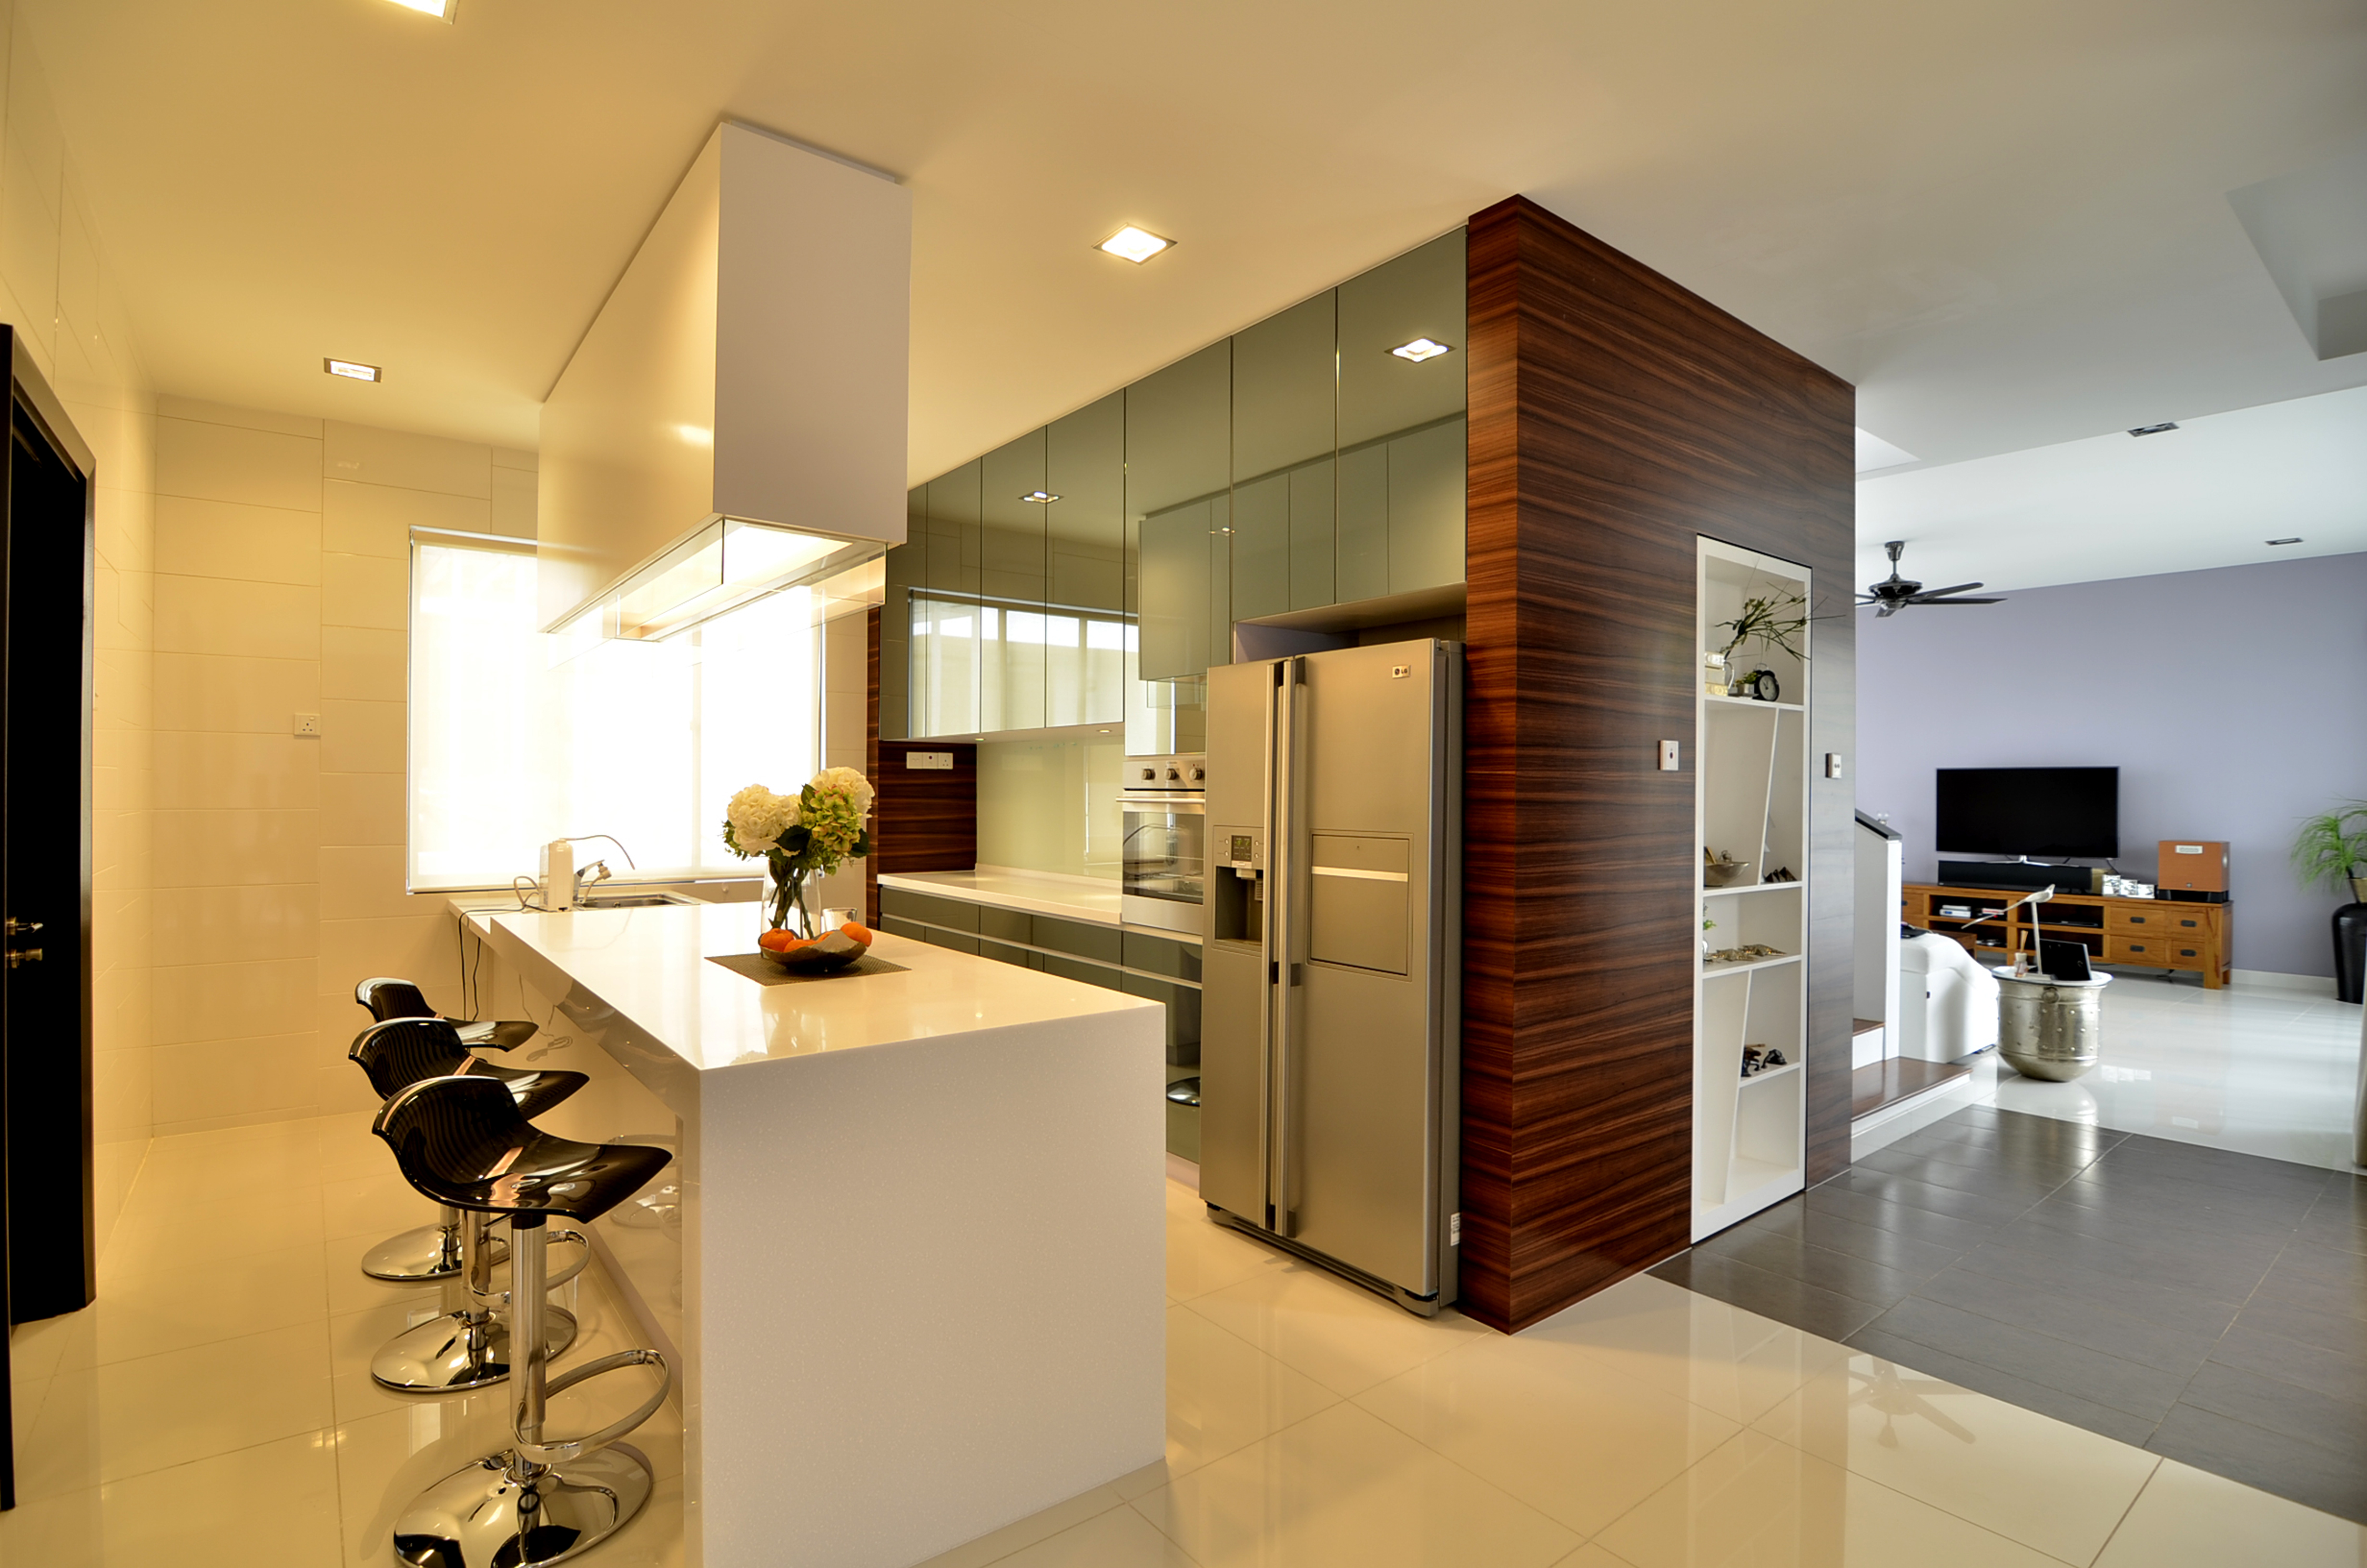 Kabinet dapur dengan storage serta mini bar berwarna putih